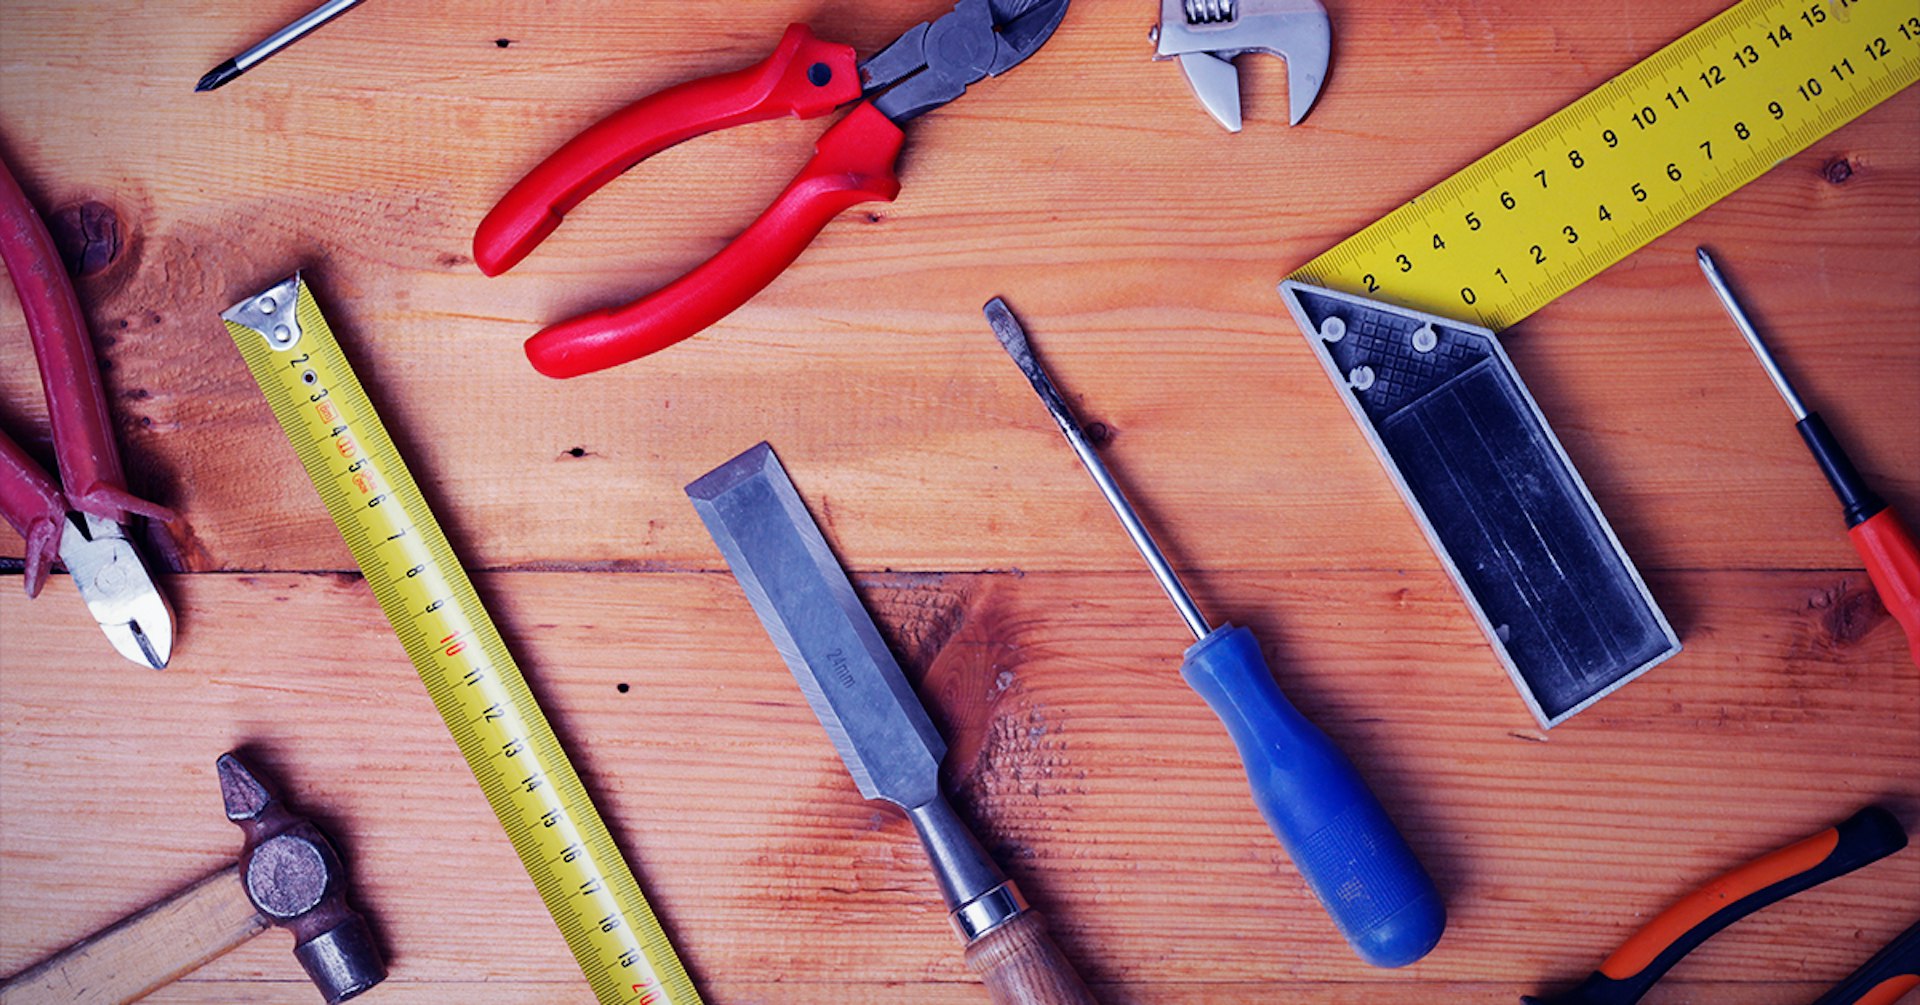 Las 10 herramientas de carpintería que debes tener en tu tablero sin falta